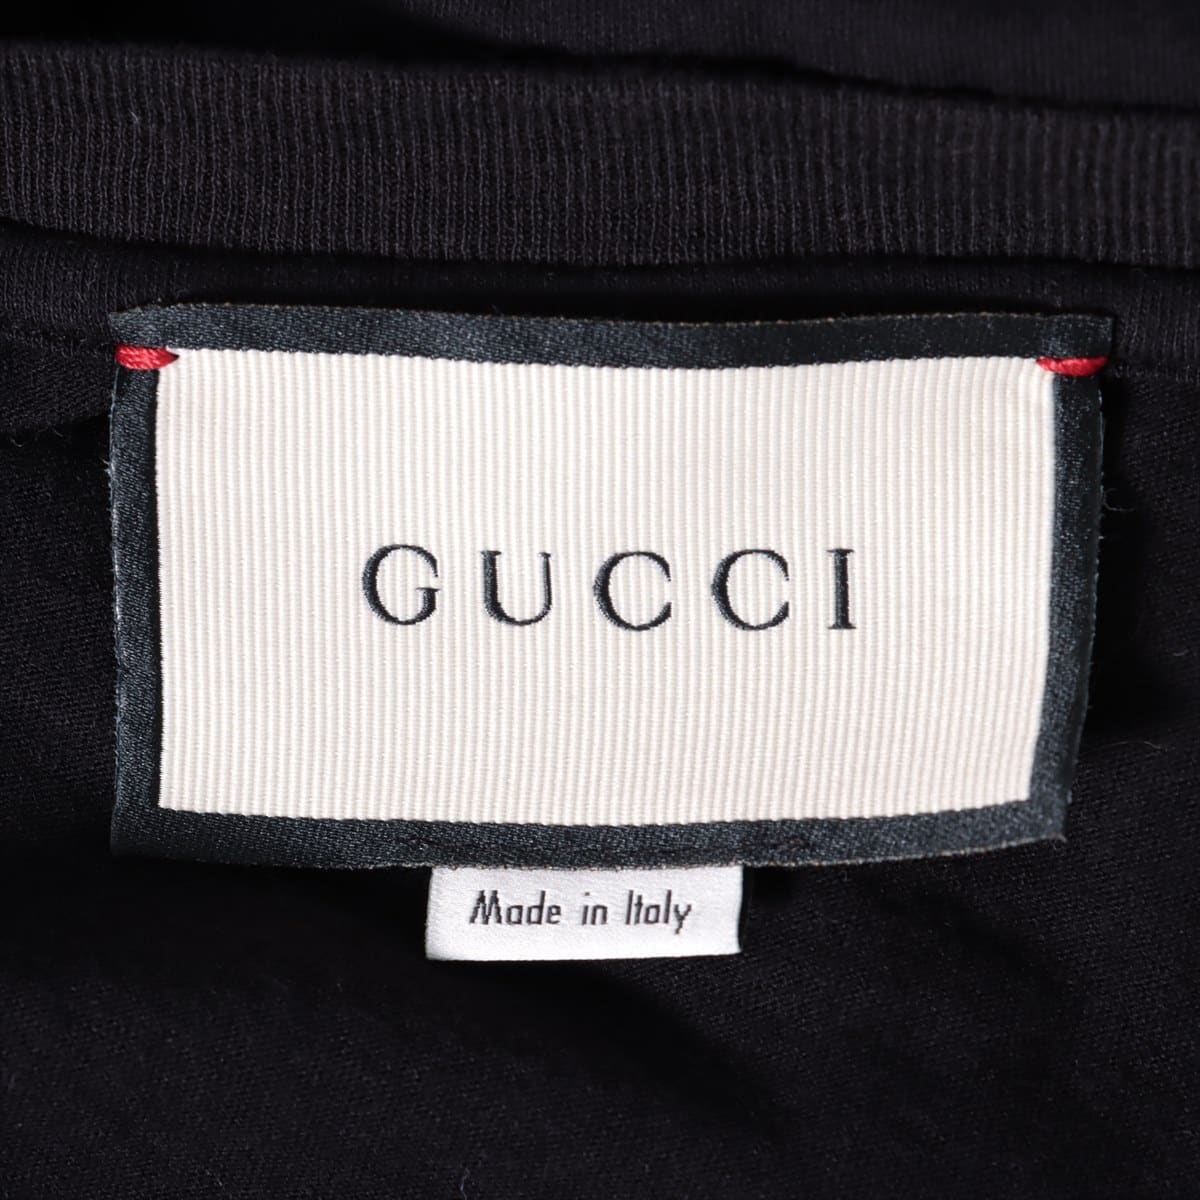 Gucci Cotton T-shirt S Men's Black Vintage logo